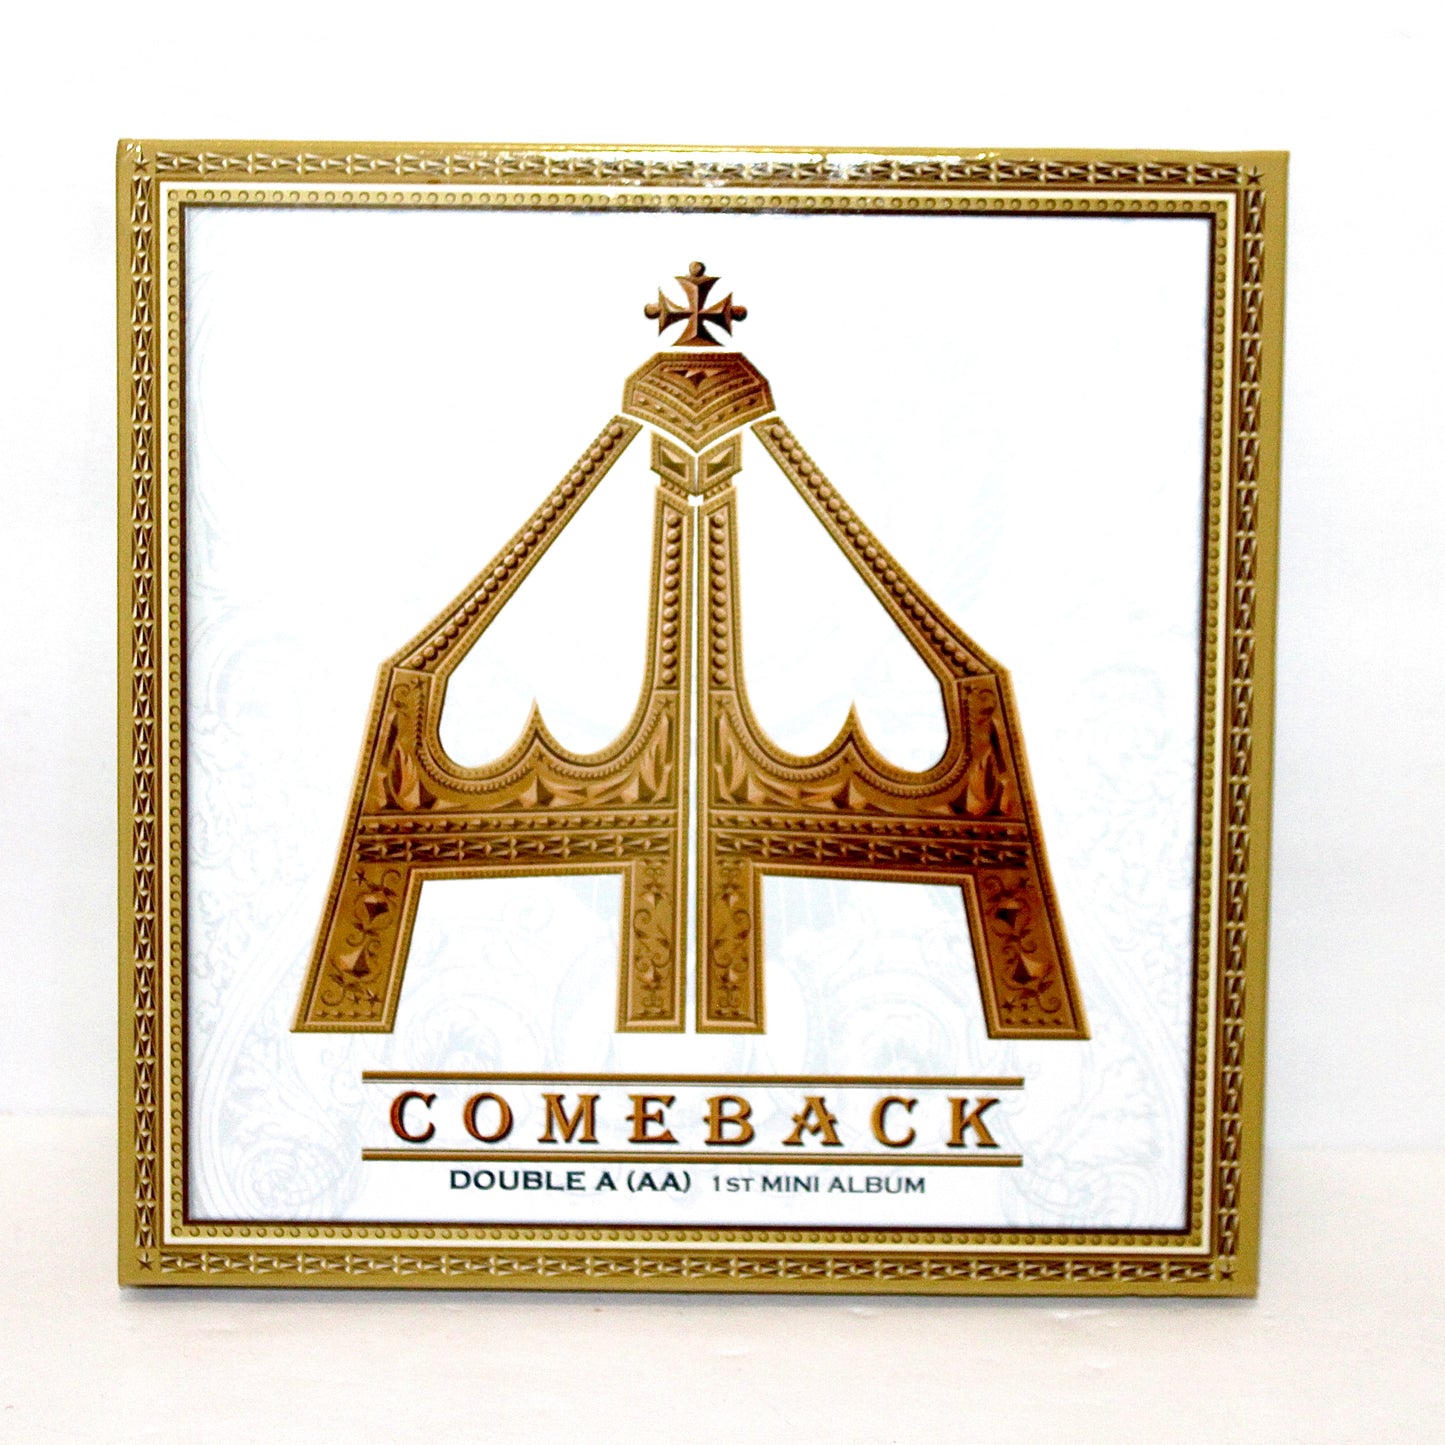 DOUBLE A (AA) 1st Mini Album: Comeback